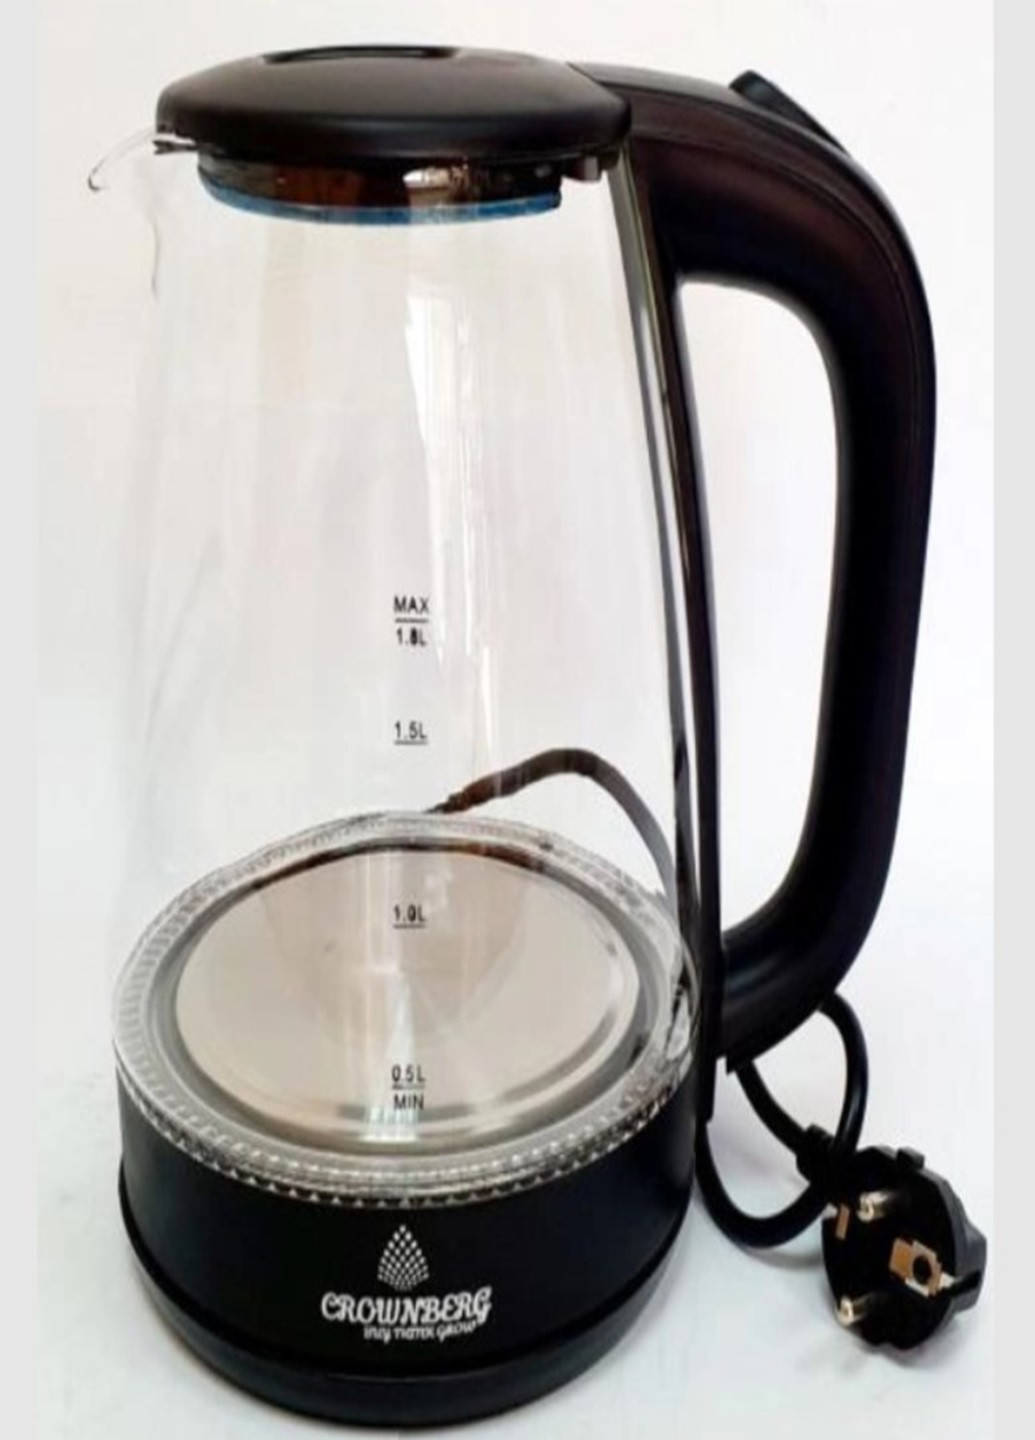 Електрочайник СВ-2846 електричний чайник 1.8л 1800Вт Crownberg (276536270)